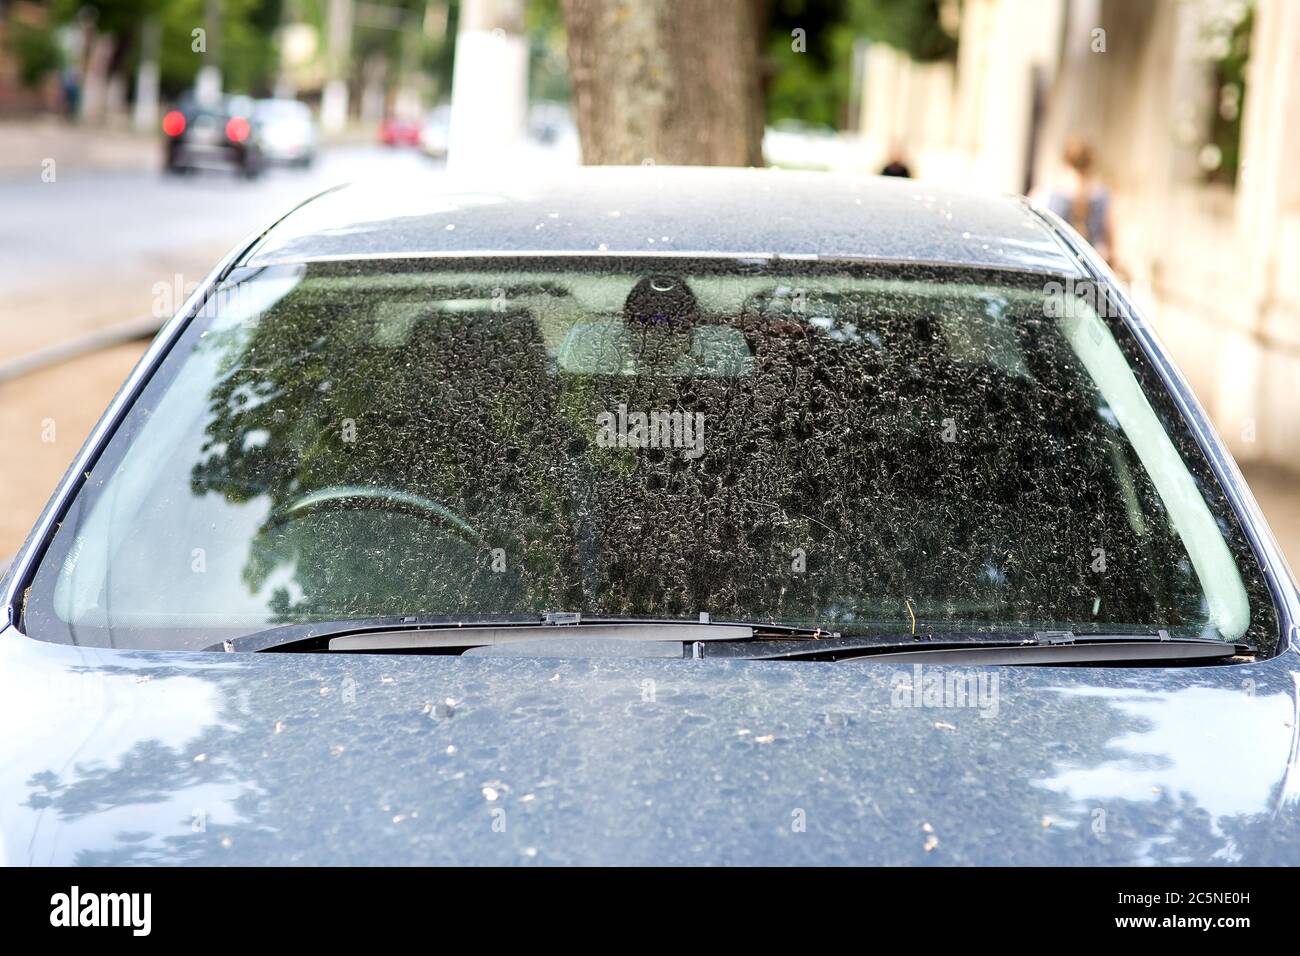 Schmutzige Auto Vorderansicht auf der Windschutzscheibe mit Scheibenwischer,  draußen niemand Stockfotografie - Alamy